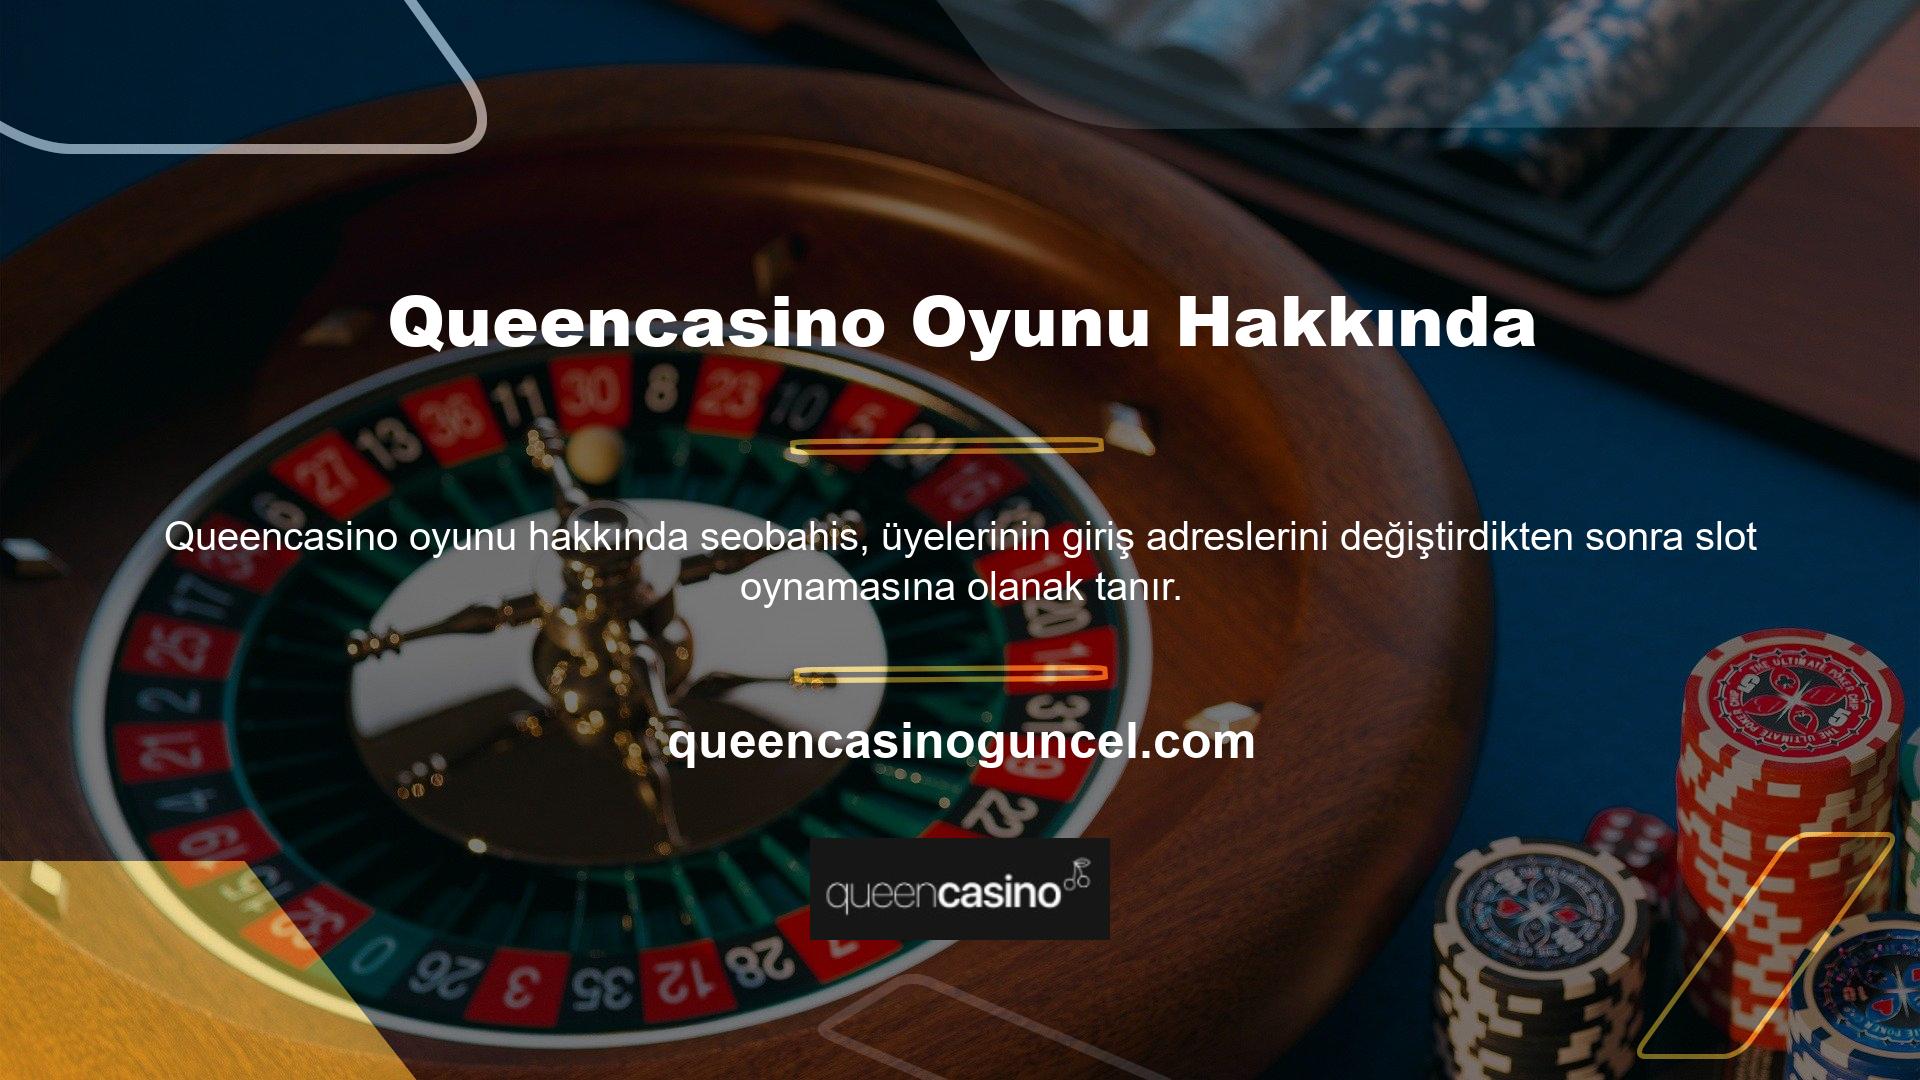 Queencasino oyunu, mekanik çarkların döndürülmesiyle ilgili eğlenceli bir oyundur